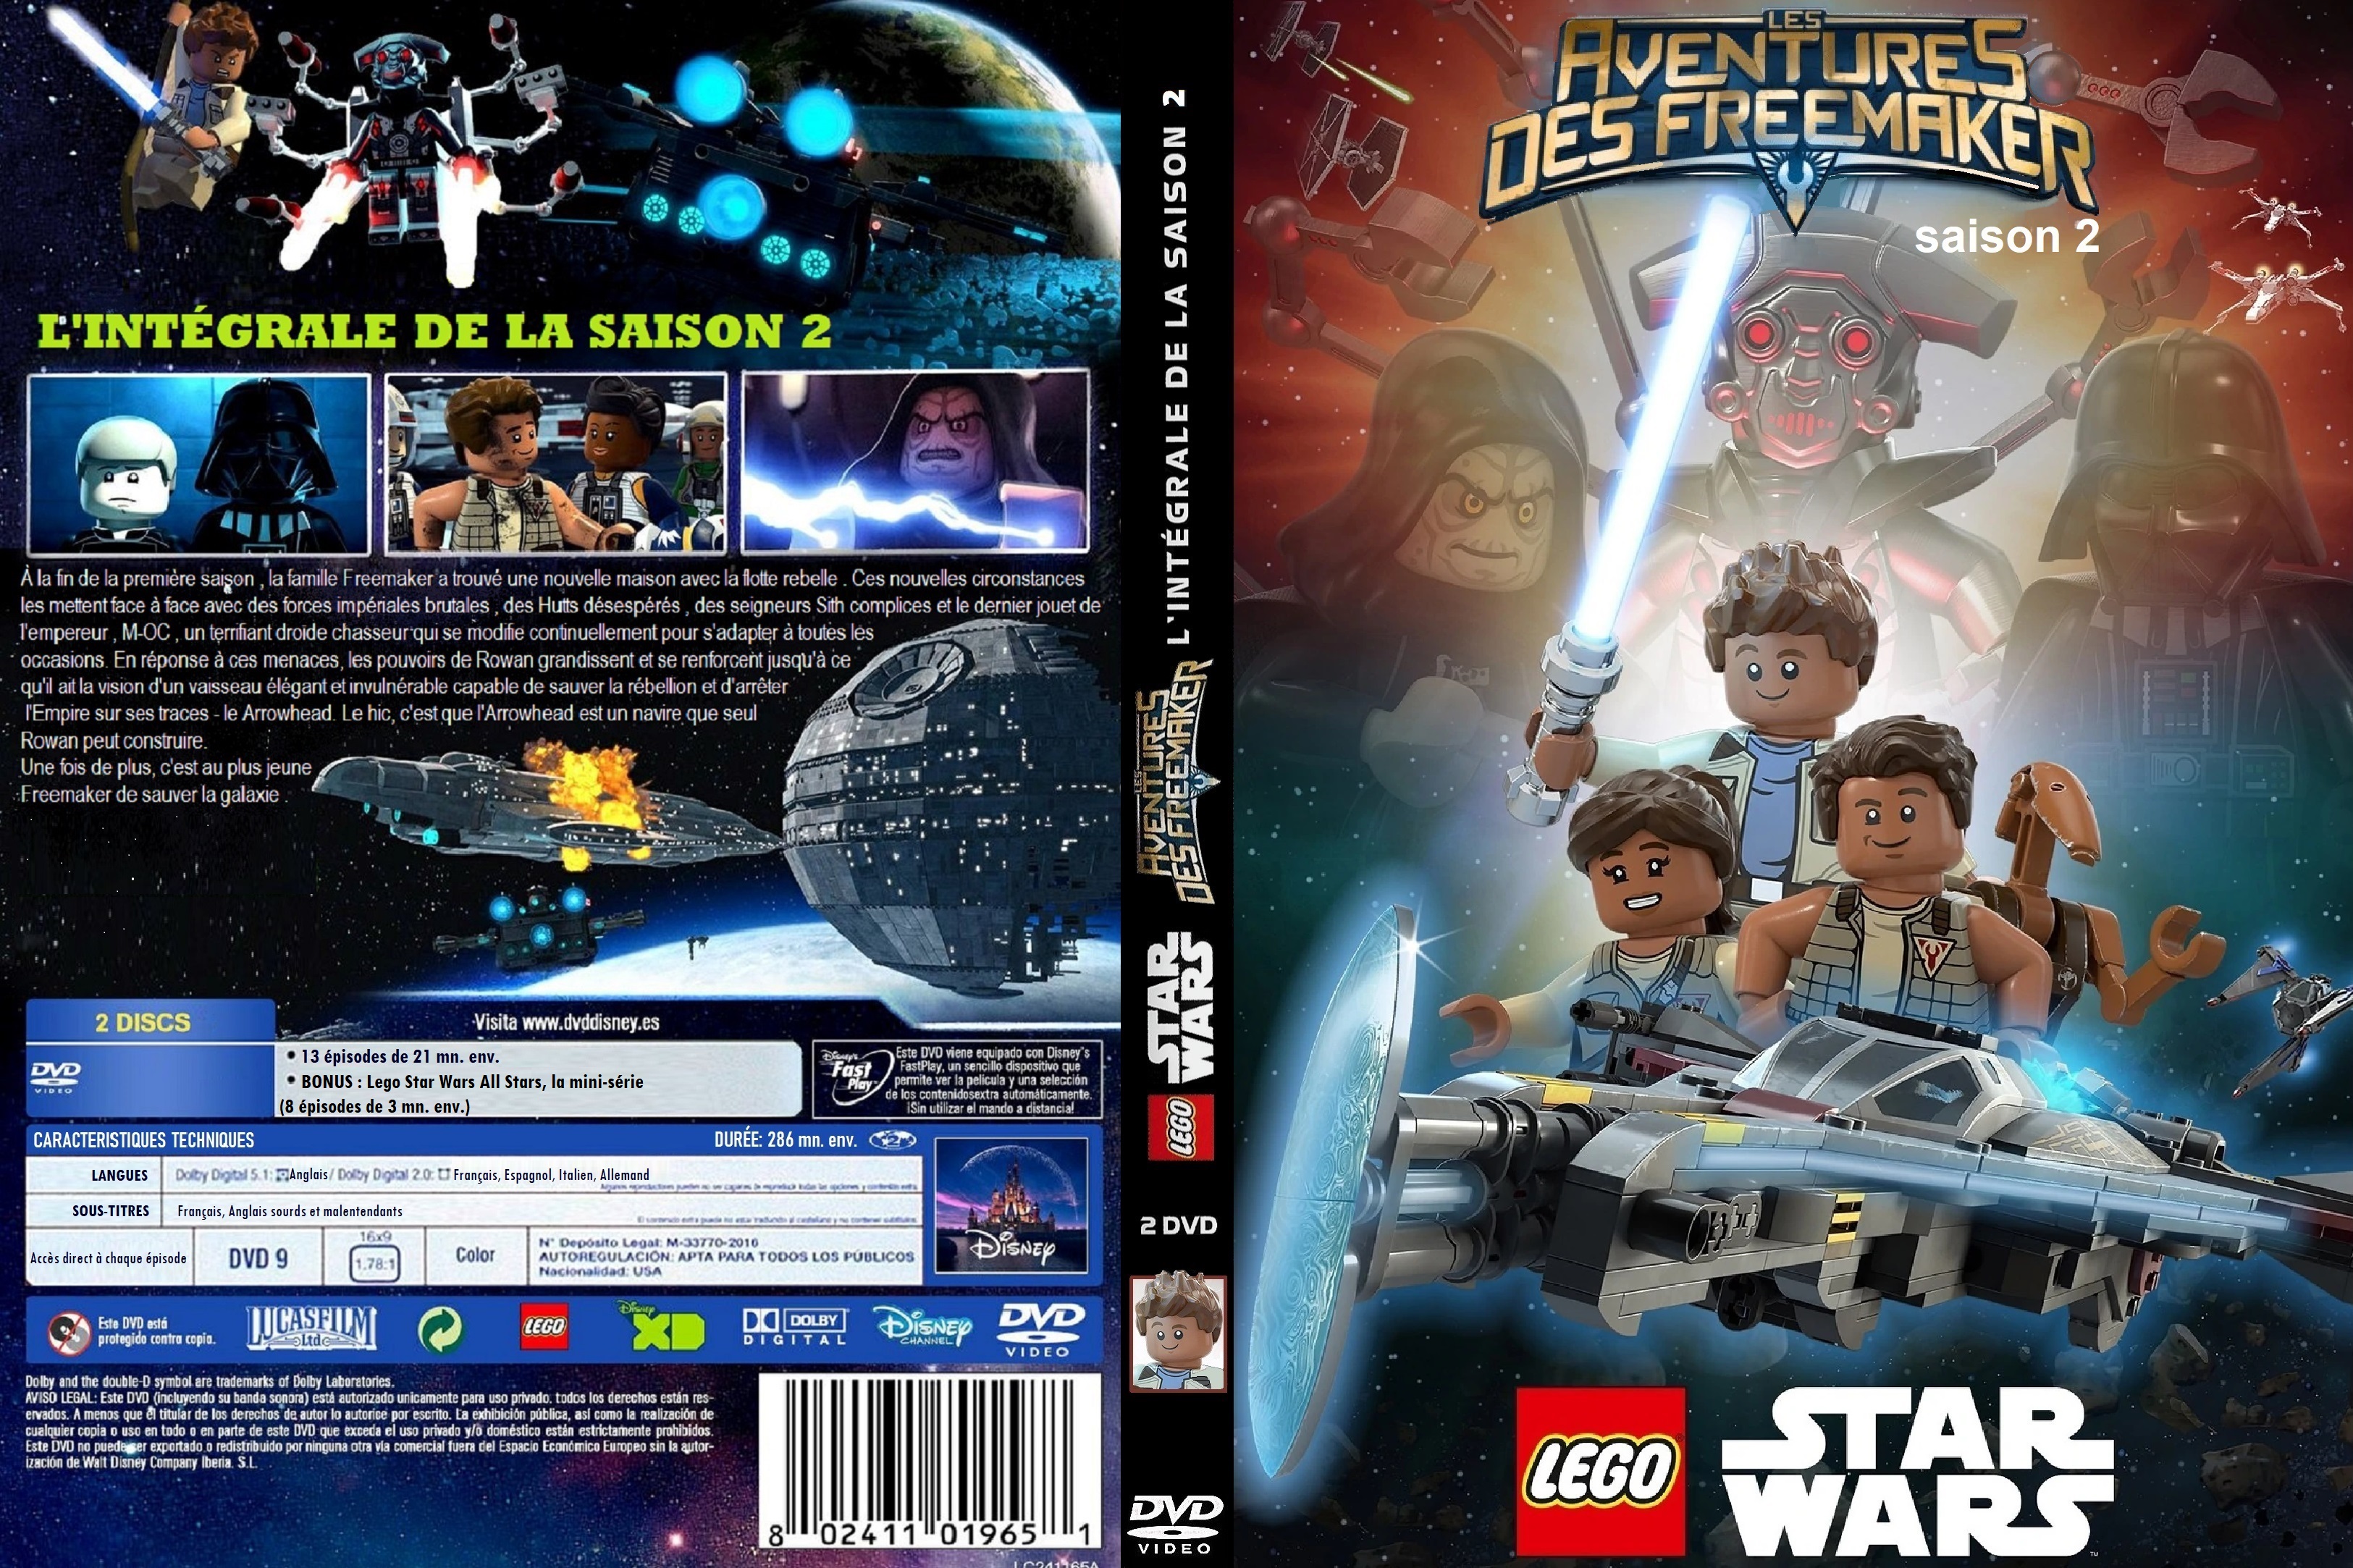 Jaquette DVD Lego Star Wars Les Aventures des Freemaker saison 2 custom v2